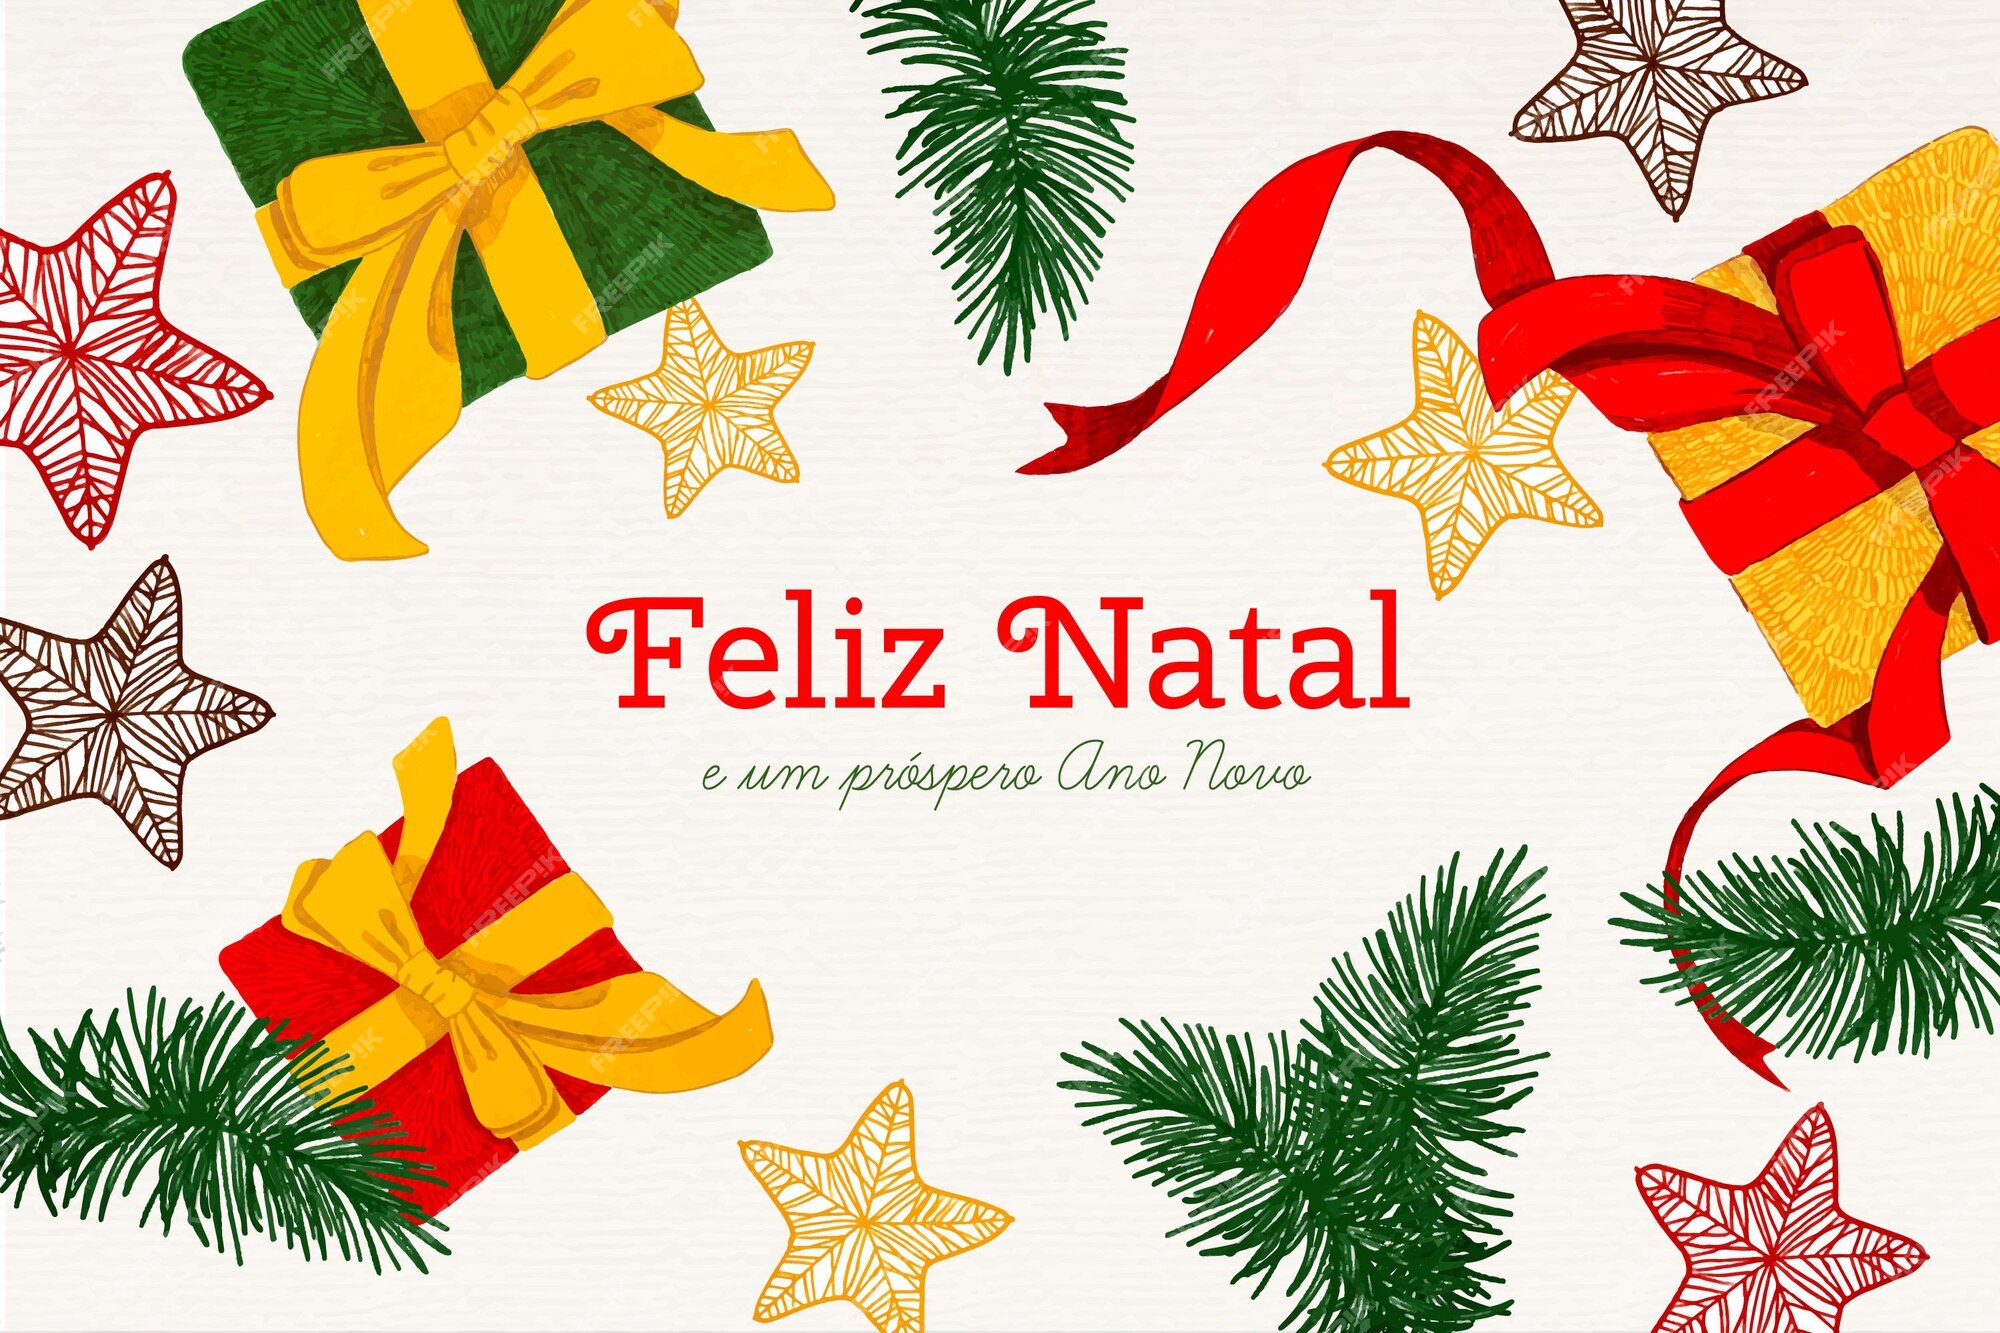 Página 3 | Festas De Natal Imagens – Download Grátis no Freepik